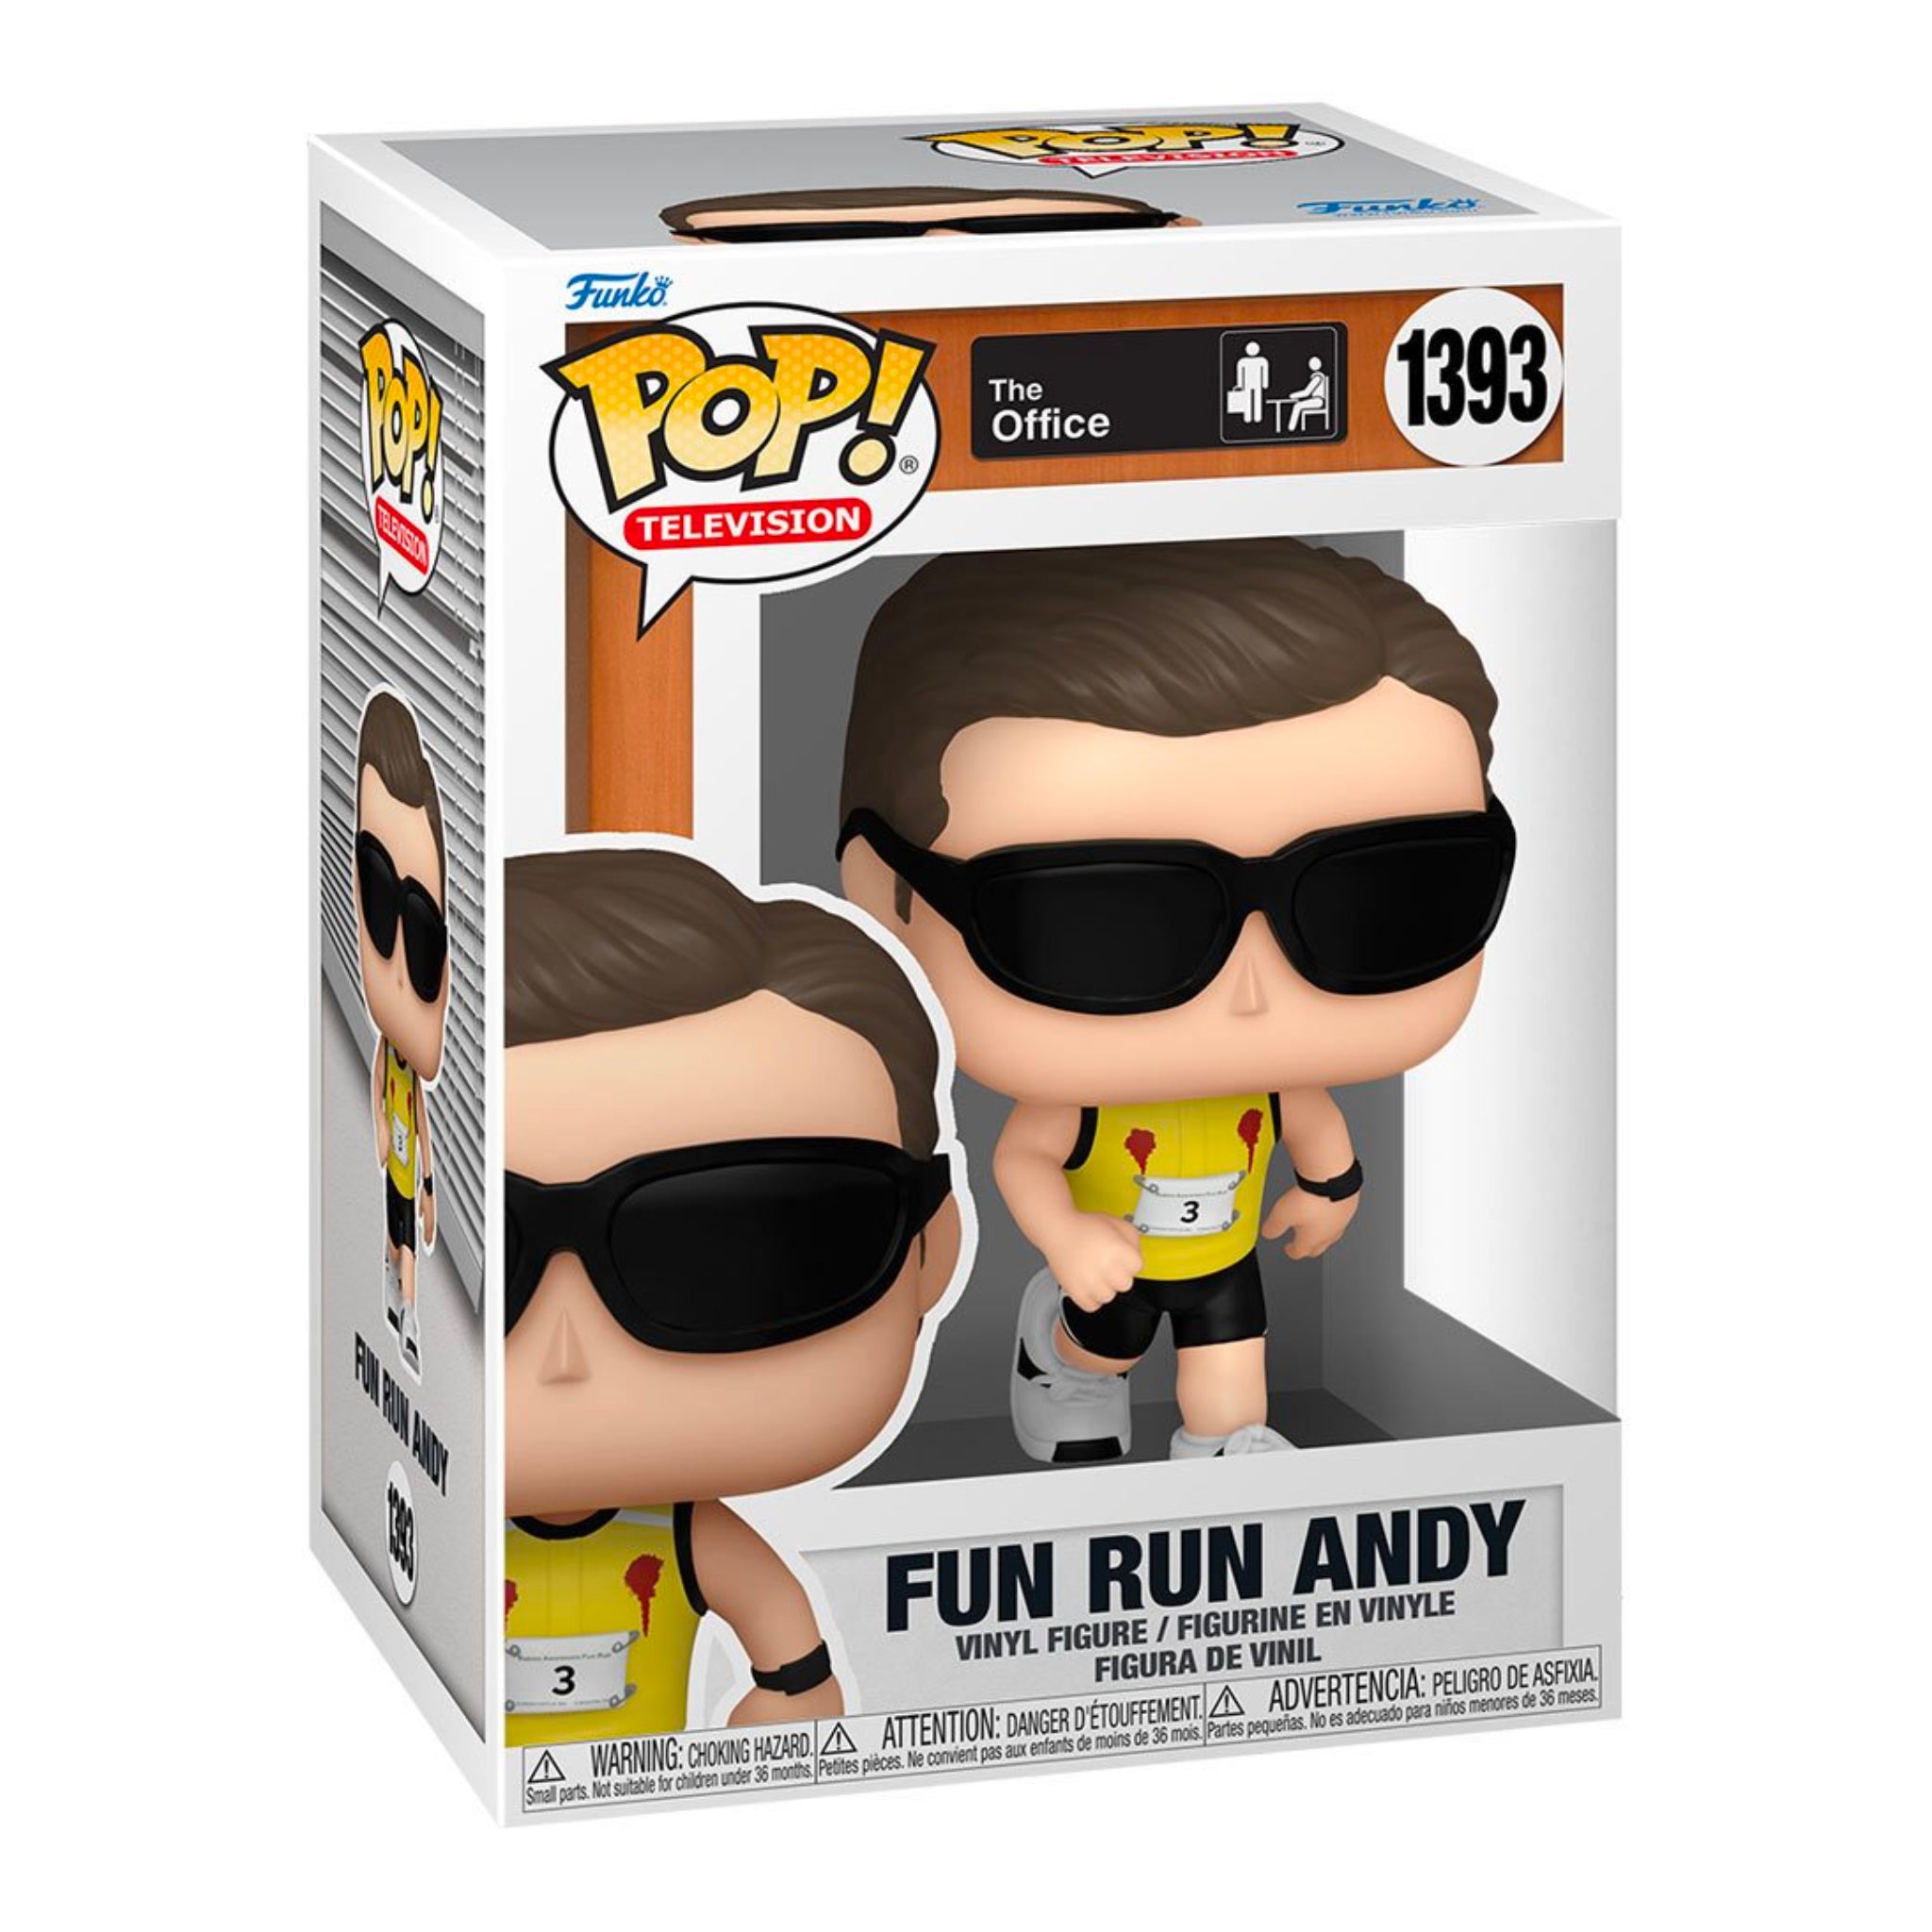 Fun Run Andy Funko Pop!